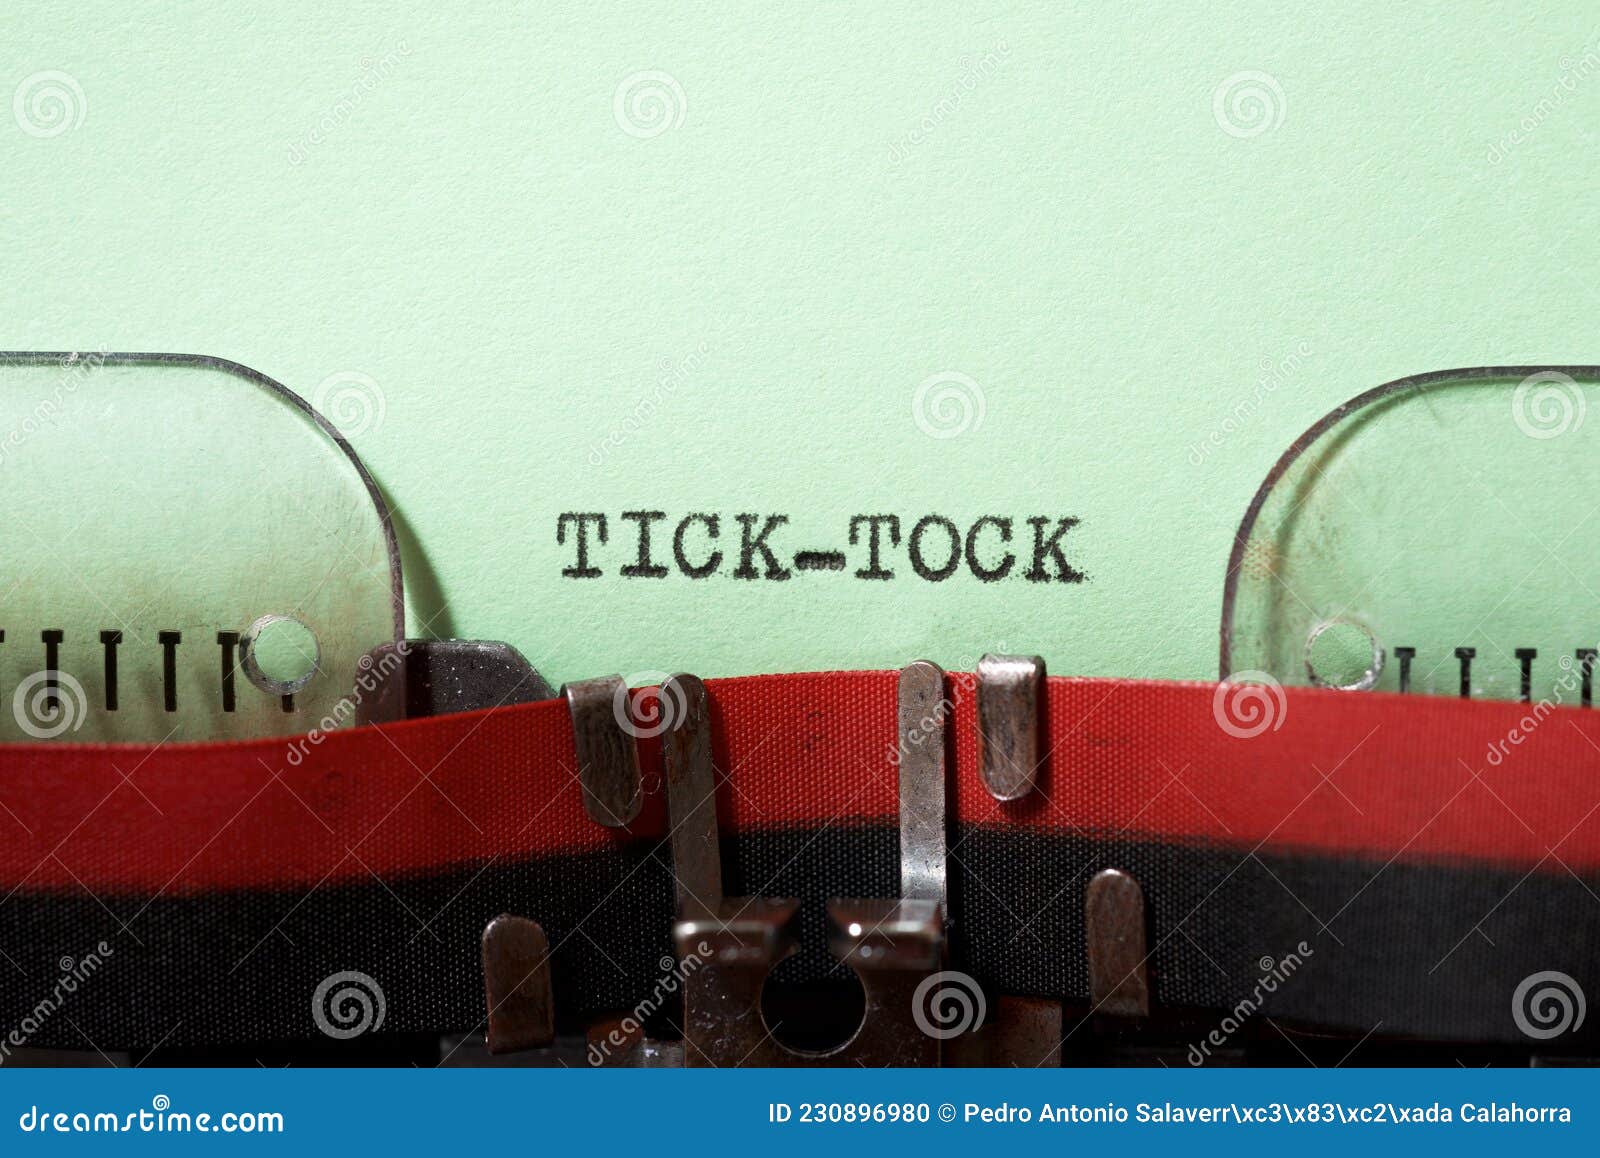 tick tock text